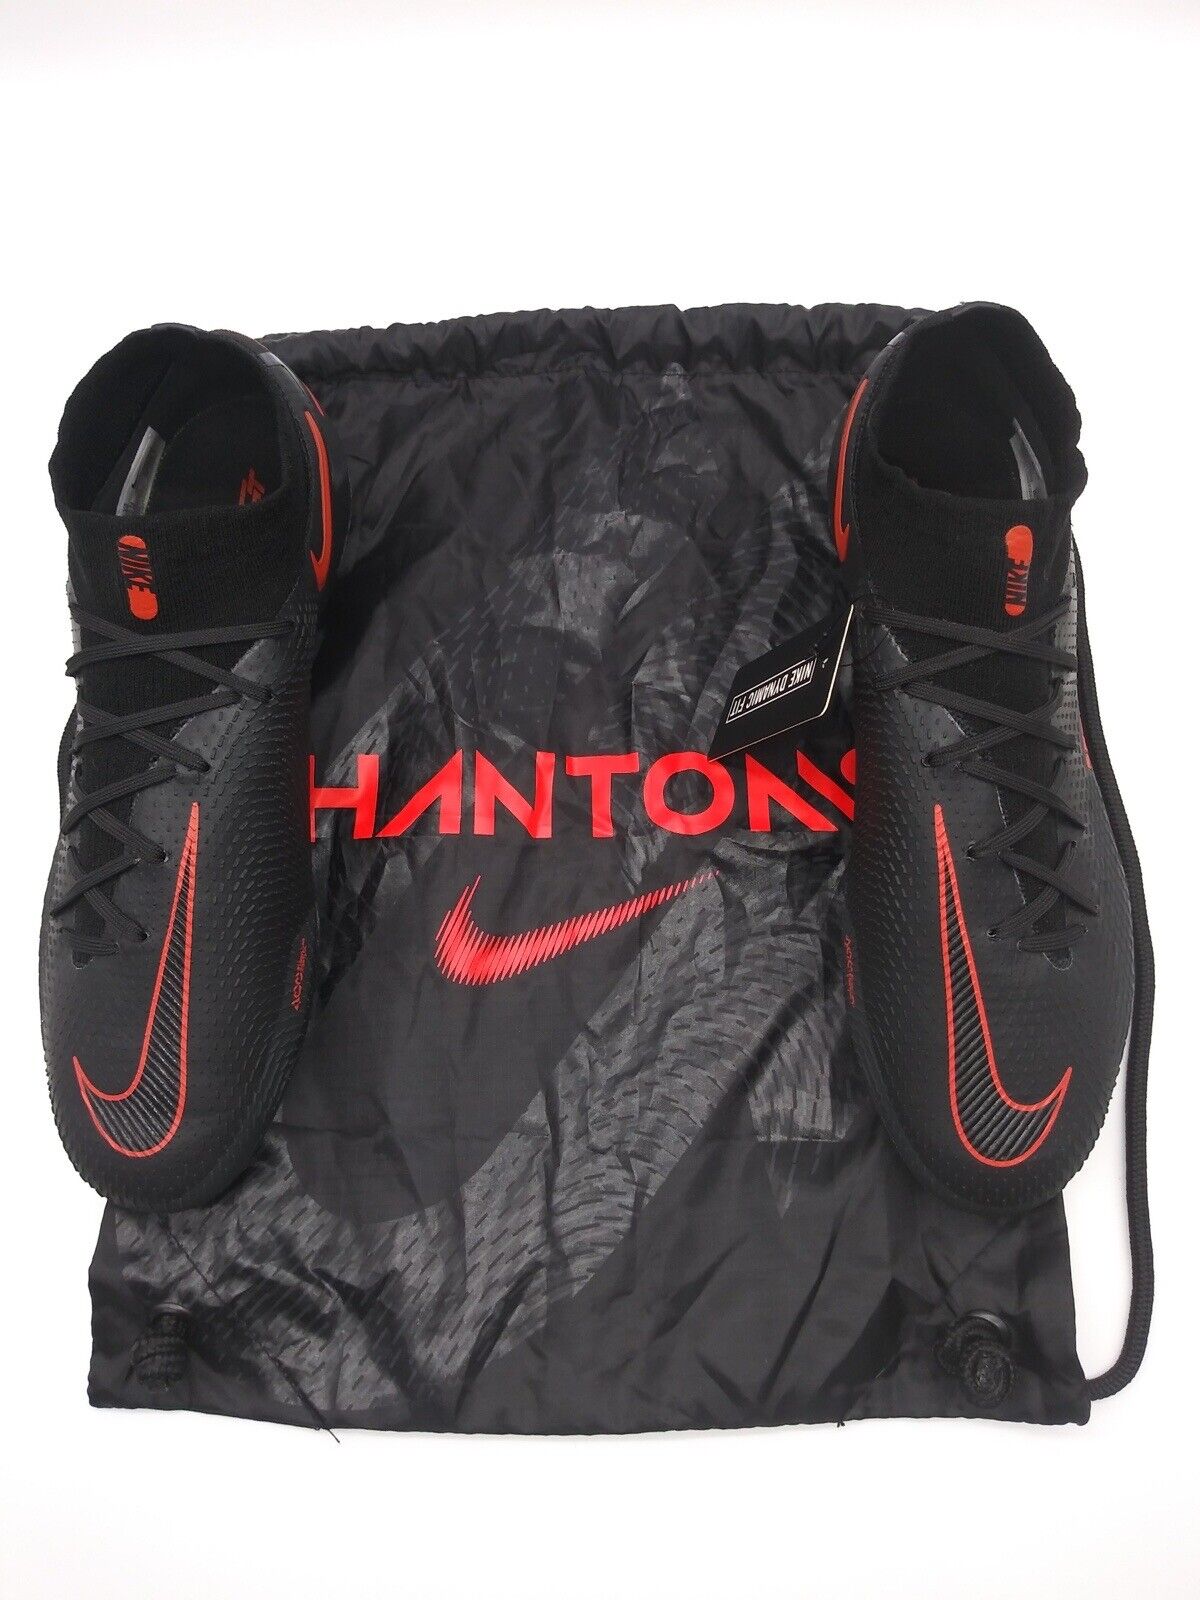 Nike Phantom GT Elite DF FG Black Red